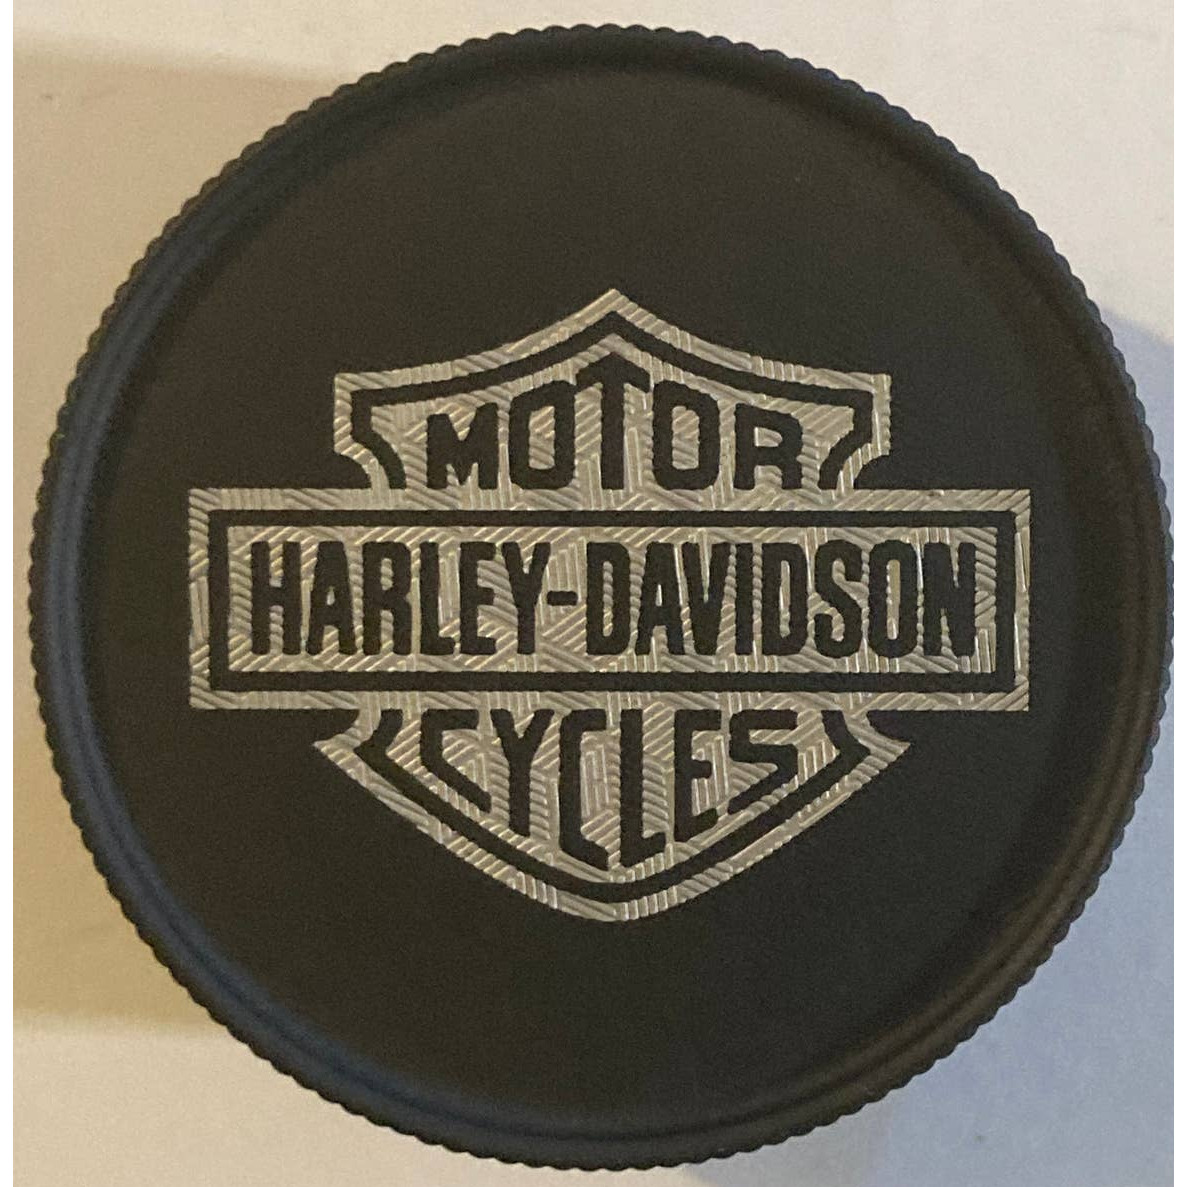 Harley Davidson Engraved Spice Grinder